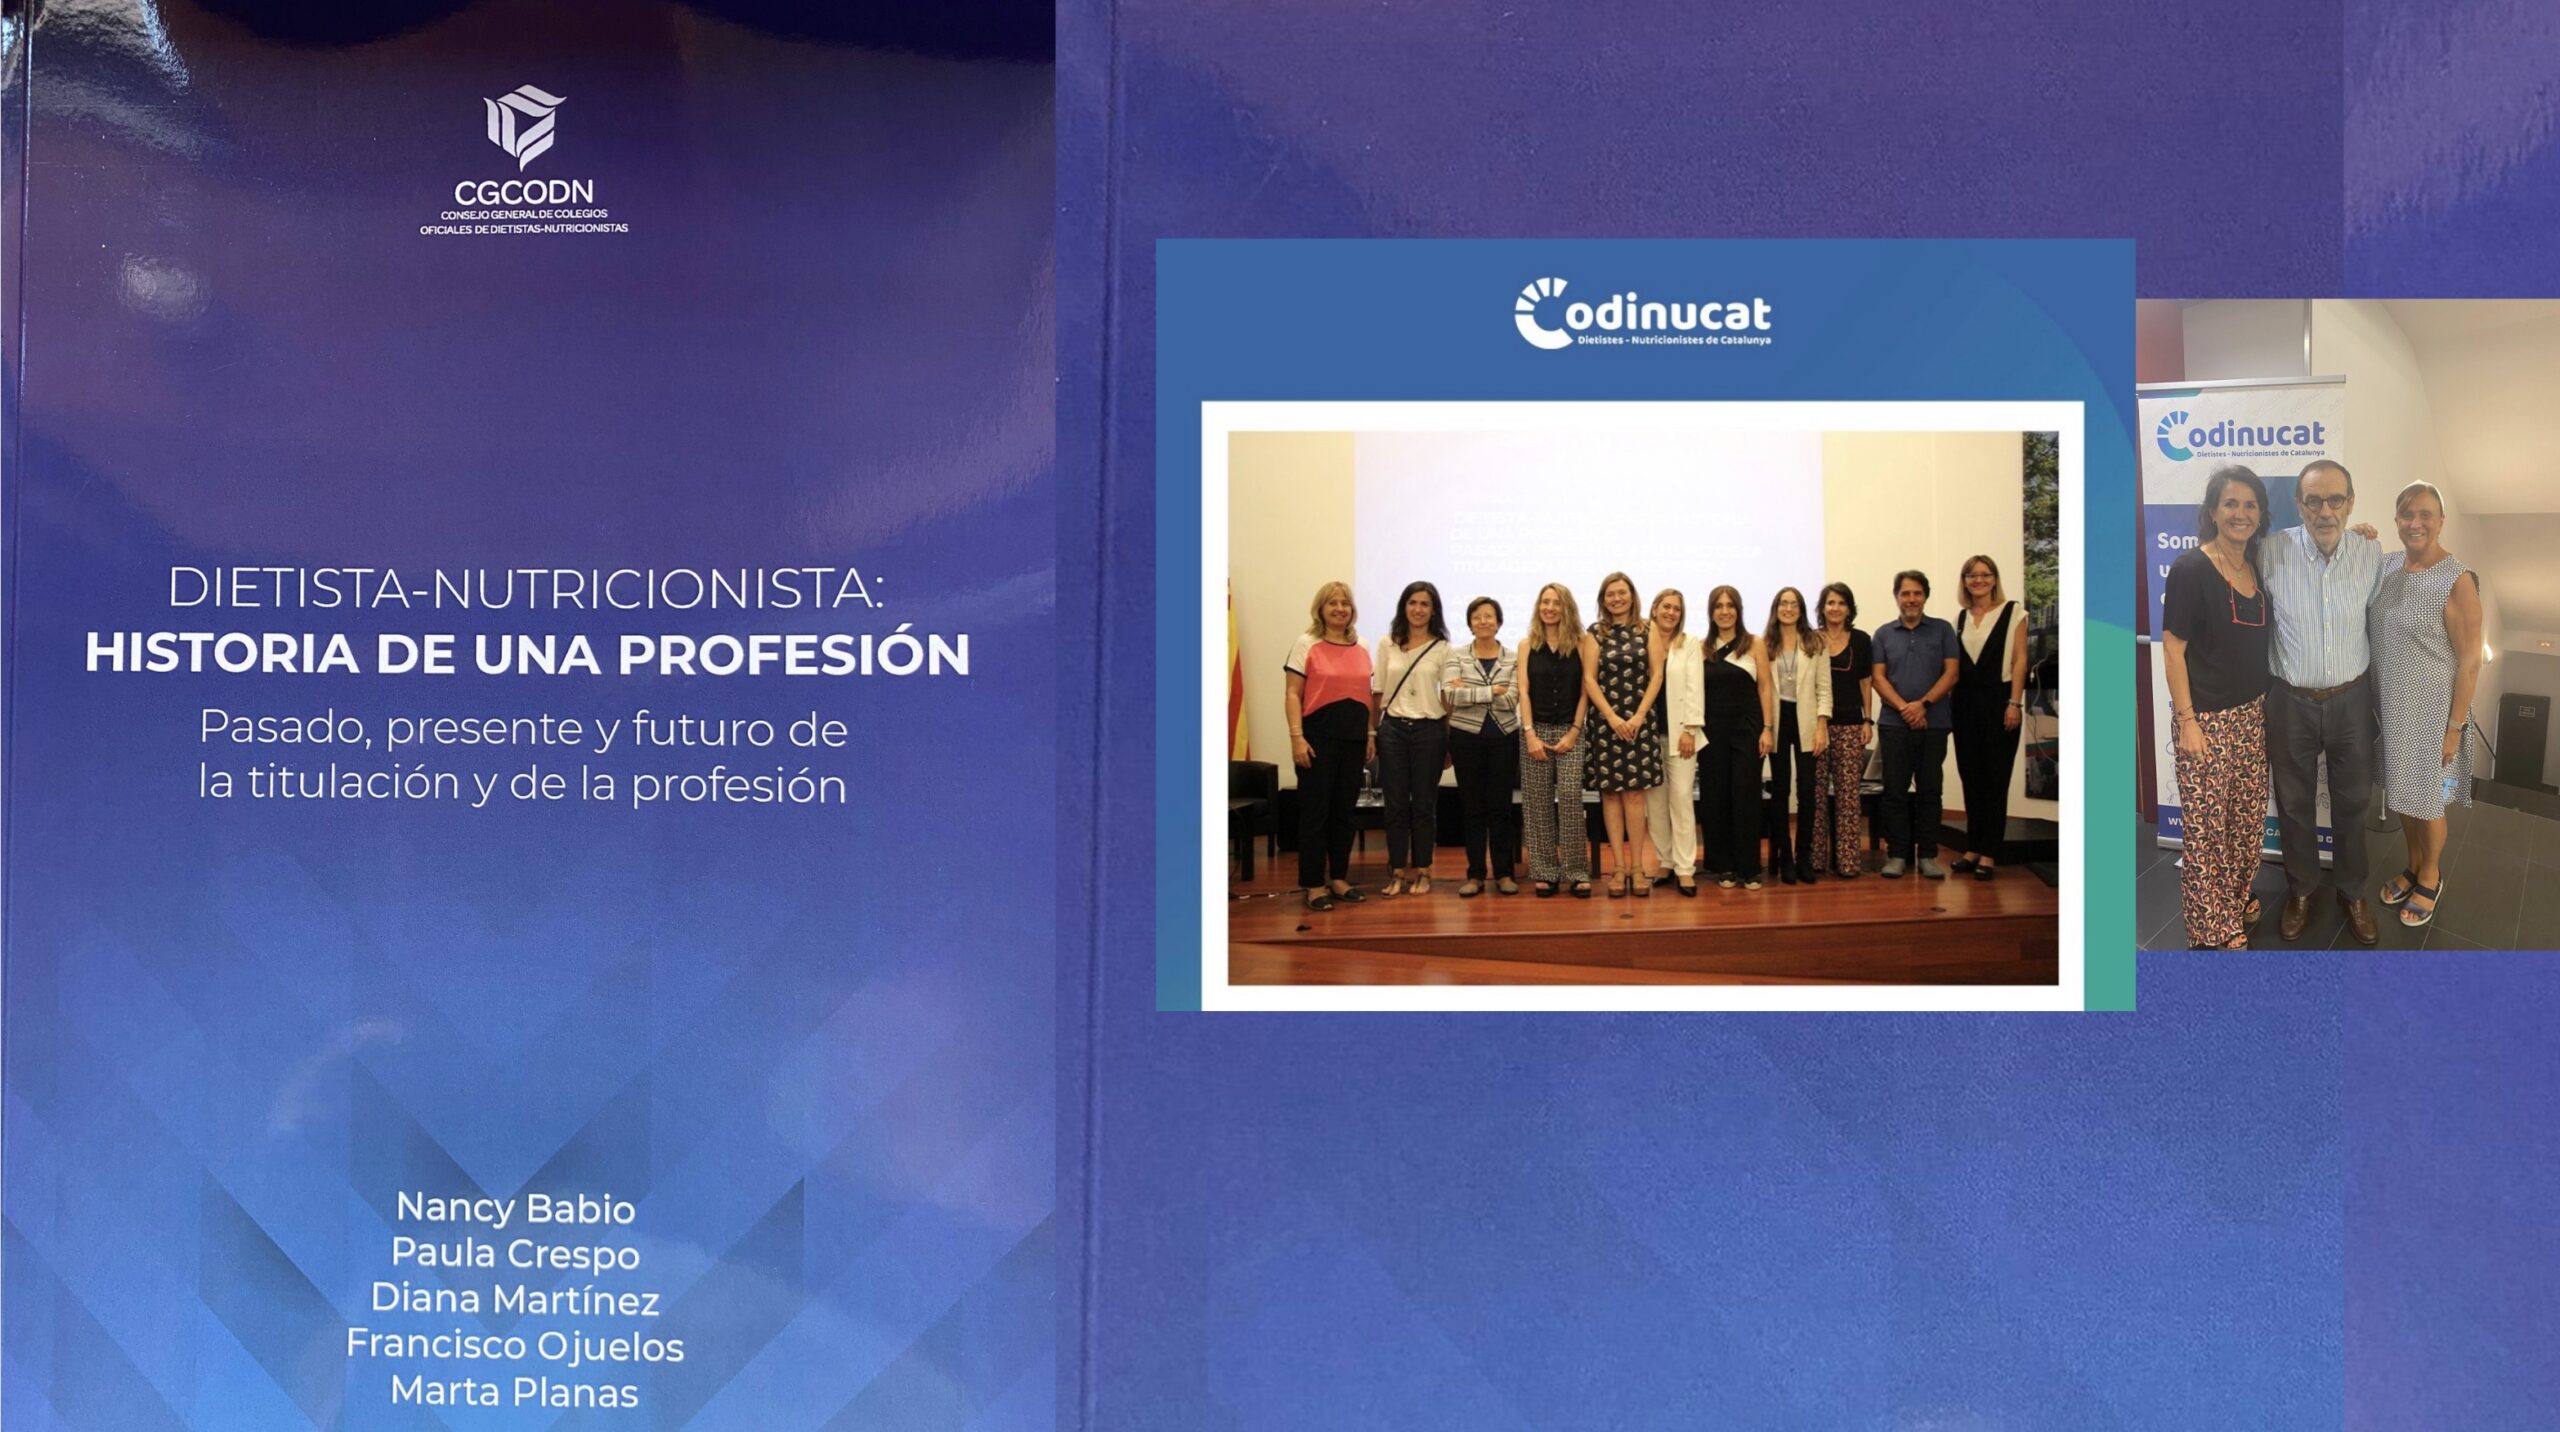 L’ACCA a la presentació del llibre “Dietista-Nutricionista: historia de una profesión” Descàrrega llibre